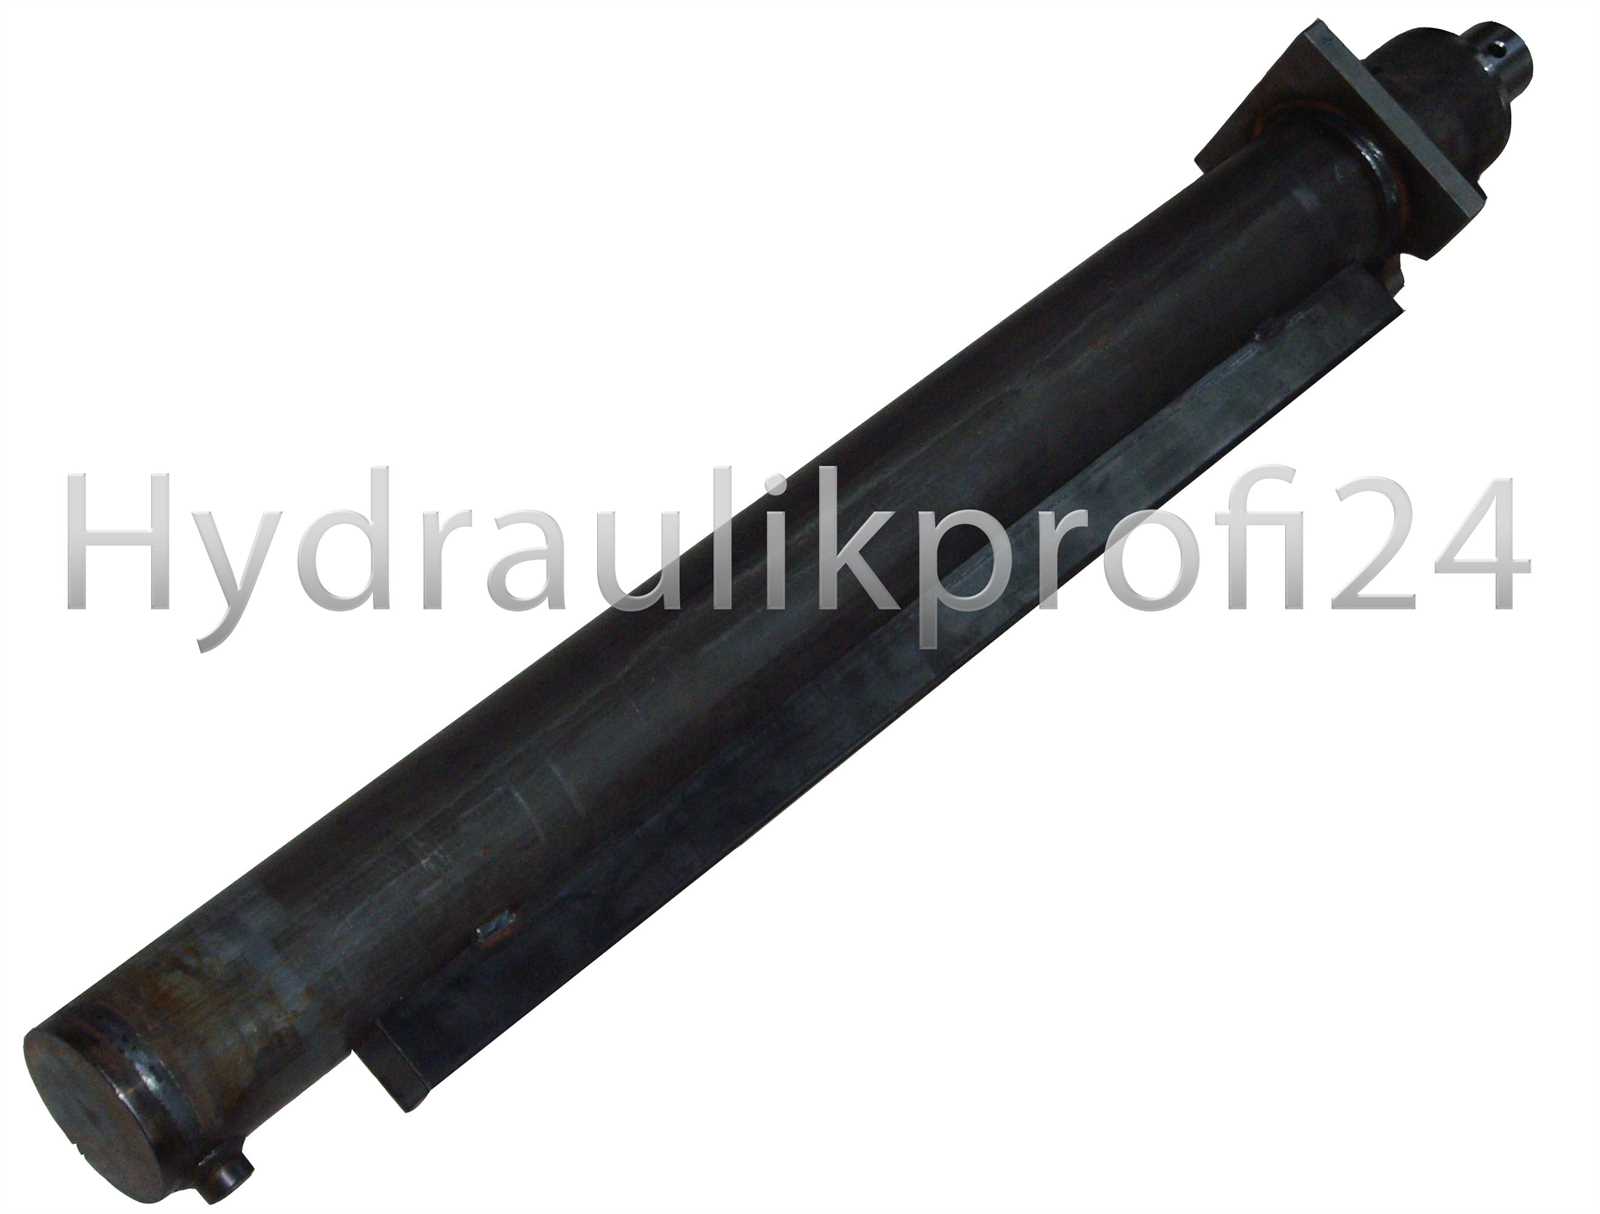 Hydraulikzylinder Holzspalter 28 T 80-120-300 Flansch 200x200x25 mm